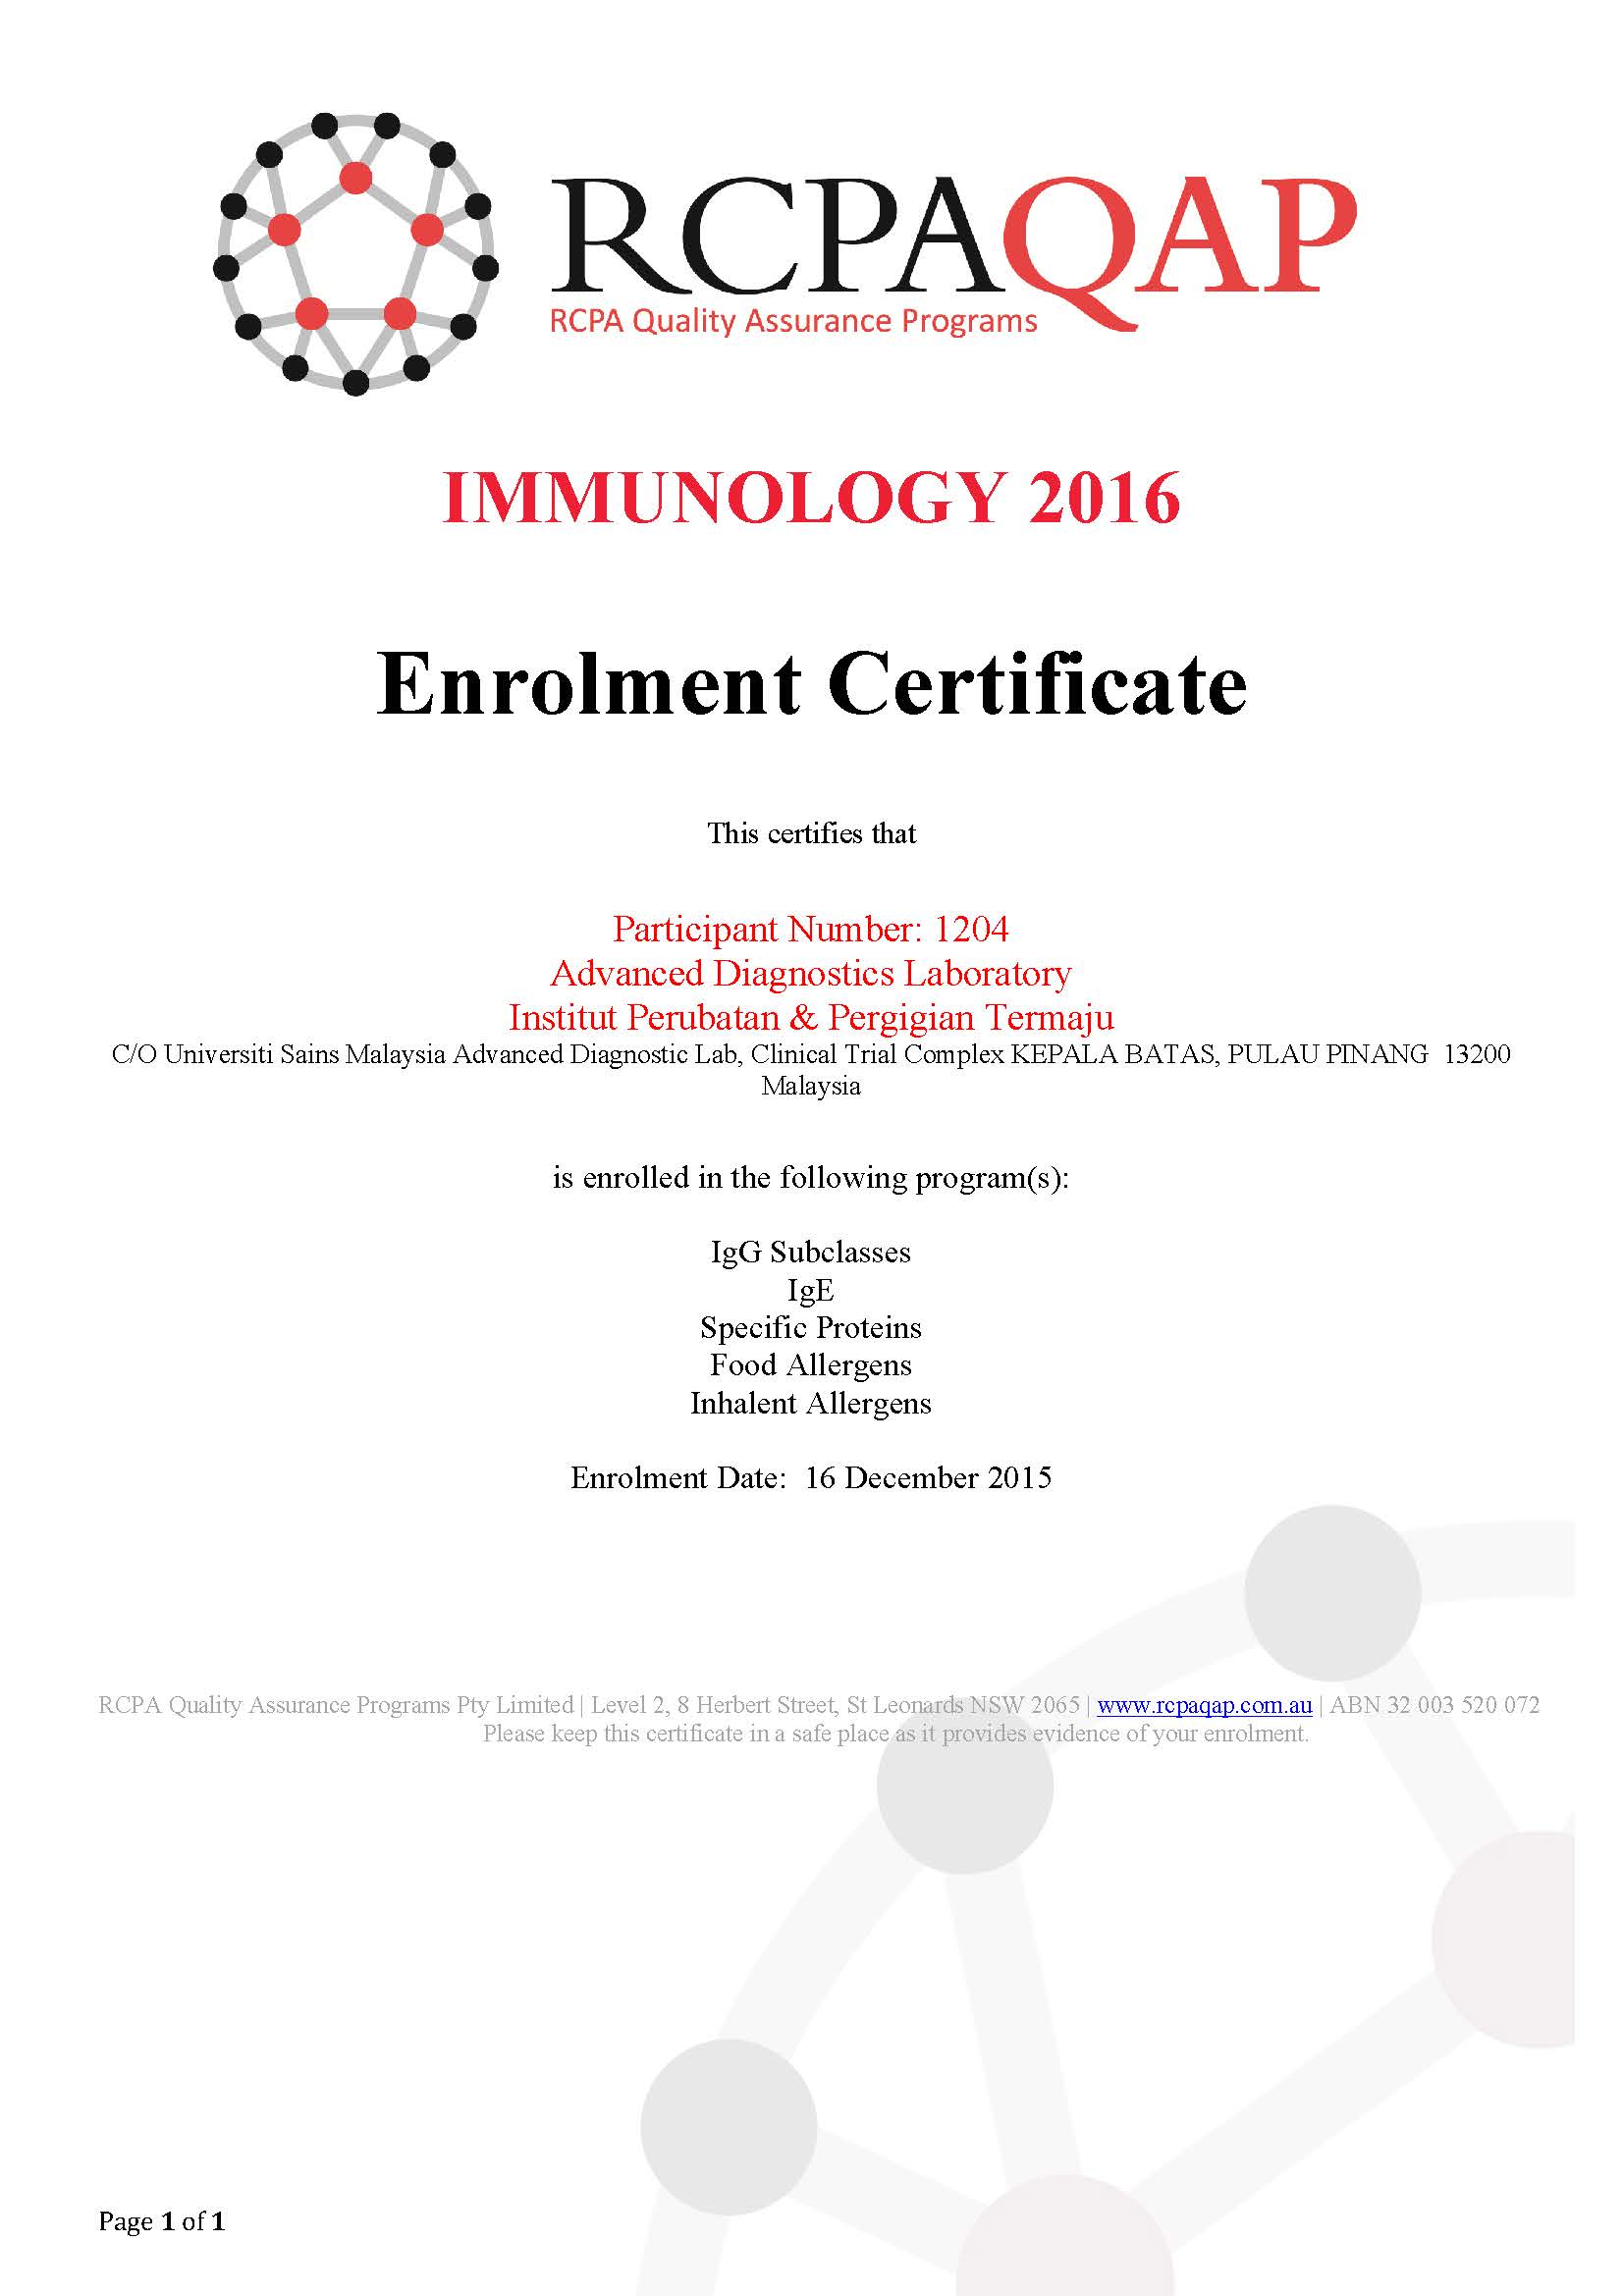 enrolment certificate immuno 2016